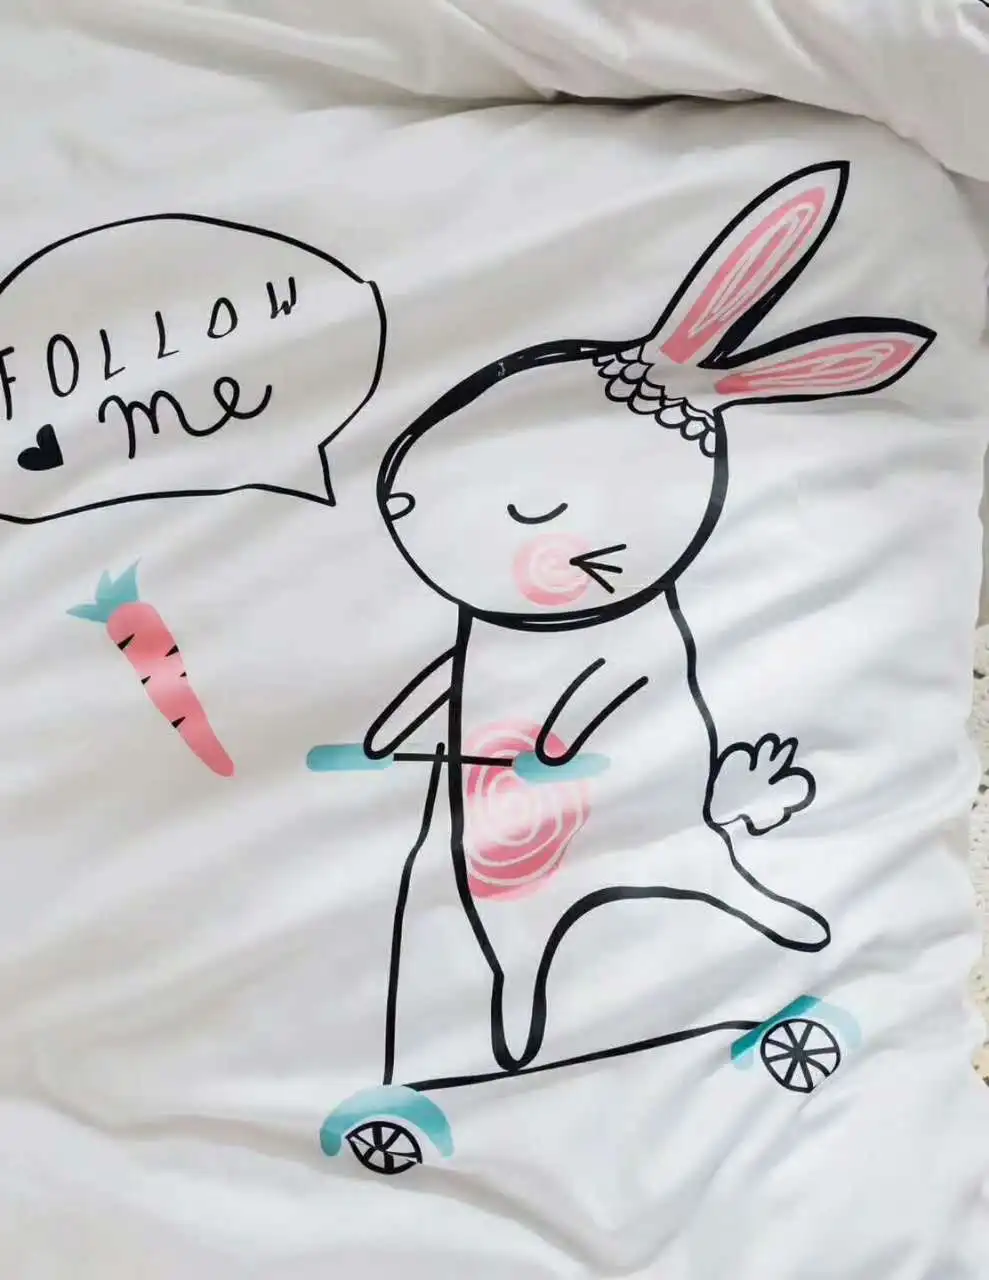 Хлопок покрывало с рисунком пингвина кролик печати бросает Стёганое Одеяло летние тонкие одеяло stiching duvet Стёганое одеяло заполнения